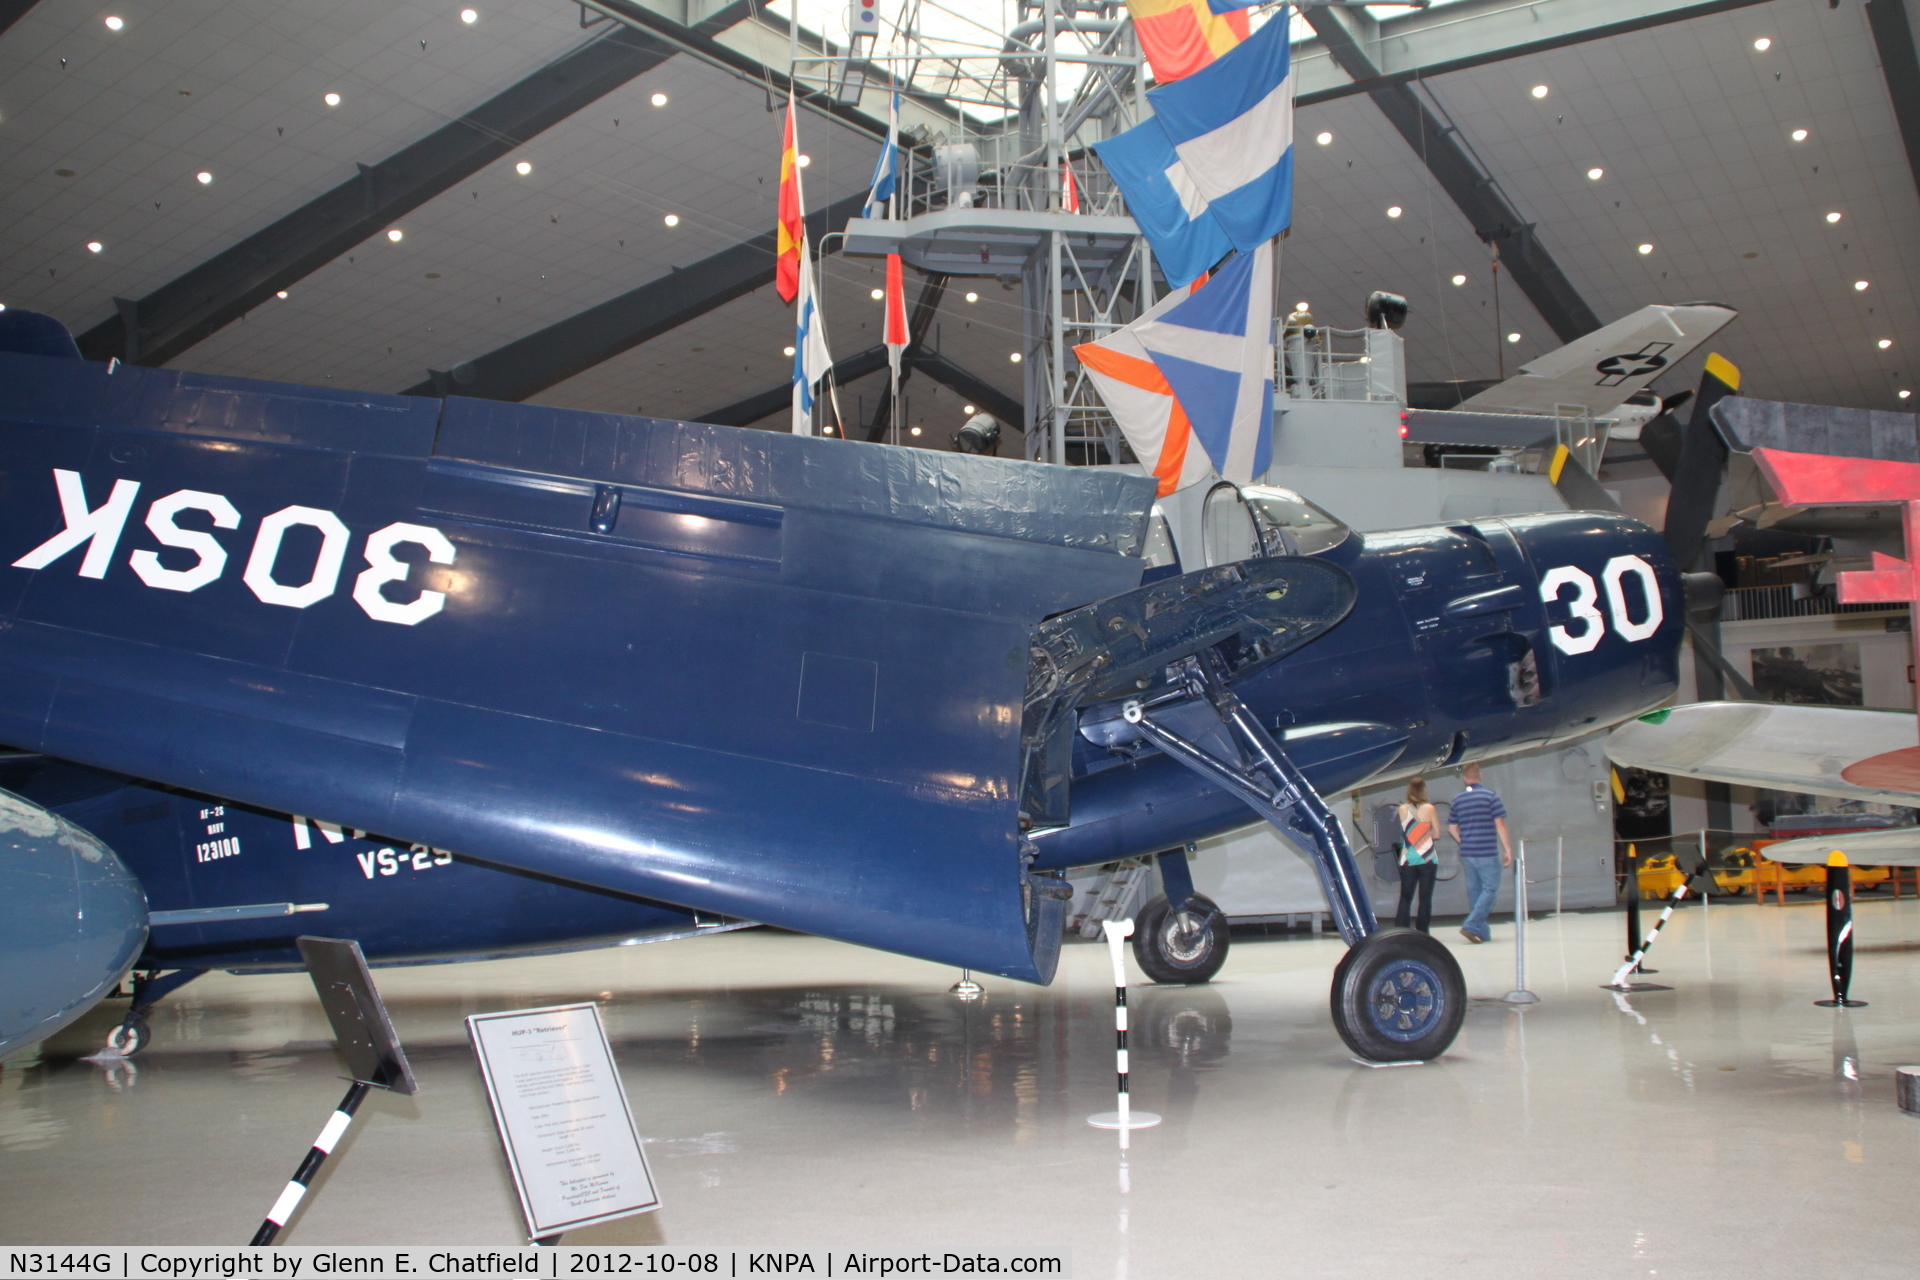 N3144G, Grumman AF-2S C/N 123100, Naval Aviation Museum